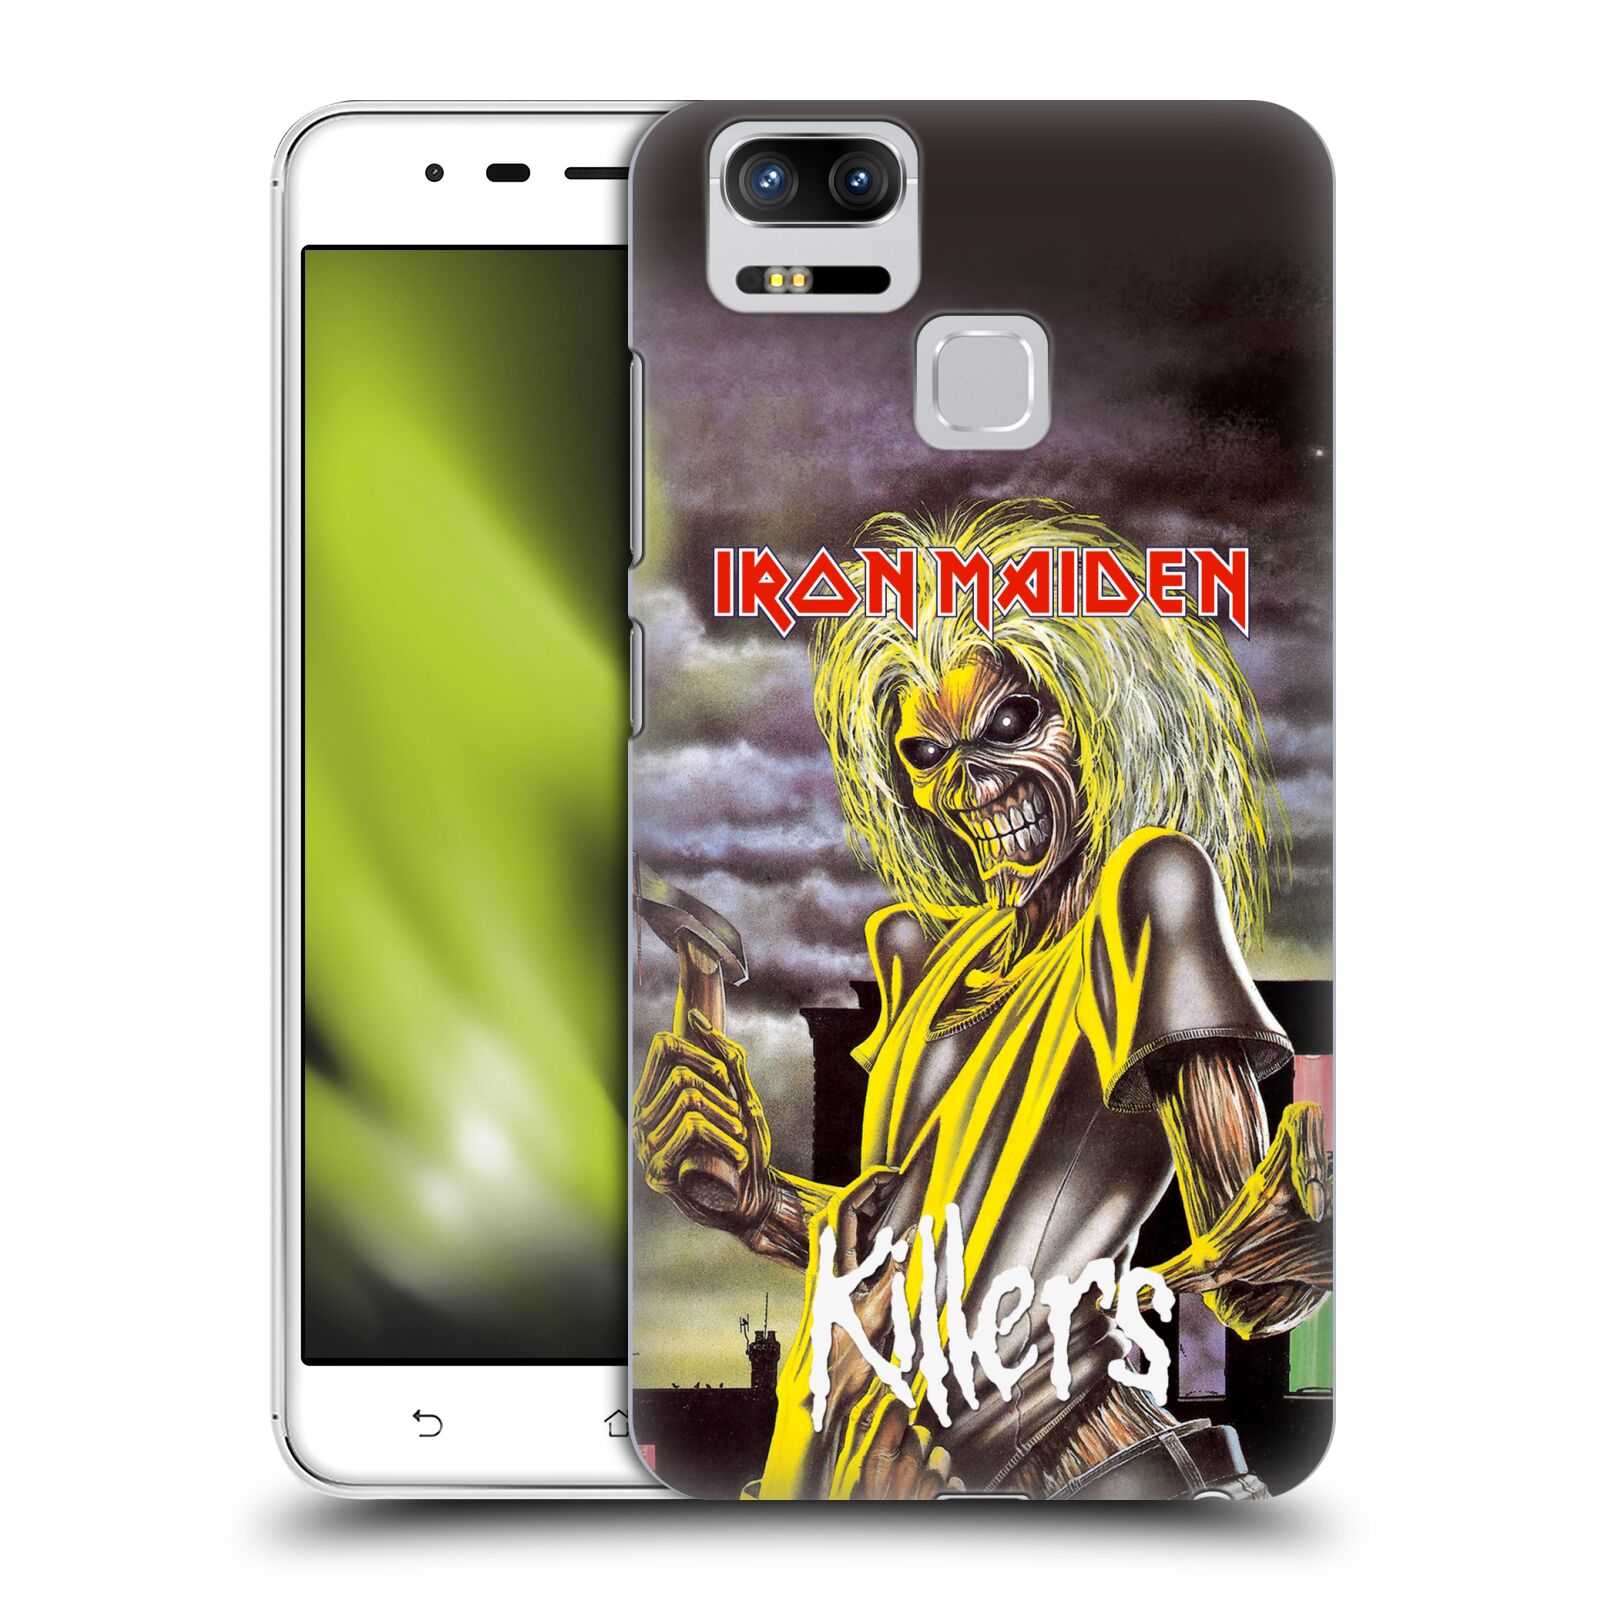 HEAD CASE plastový obal na mobil Asus Zenfone 3 Zoom ZE553KL Heavymetalová skupina Iron Maiden Killers